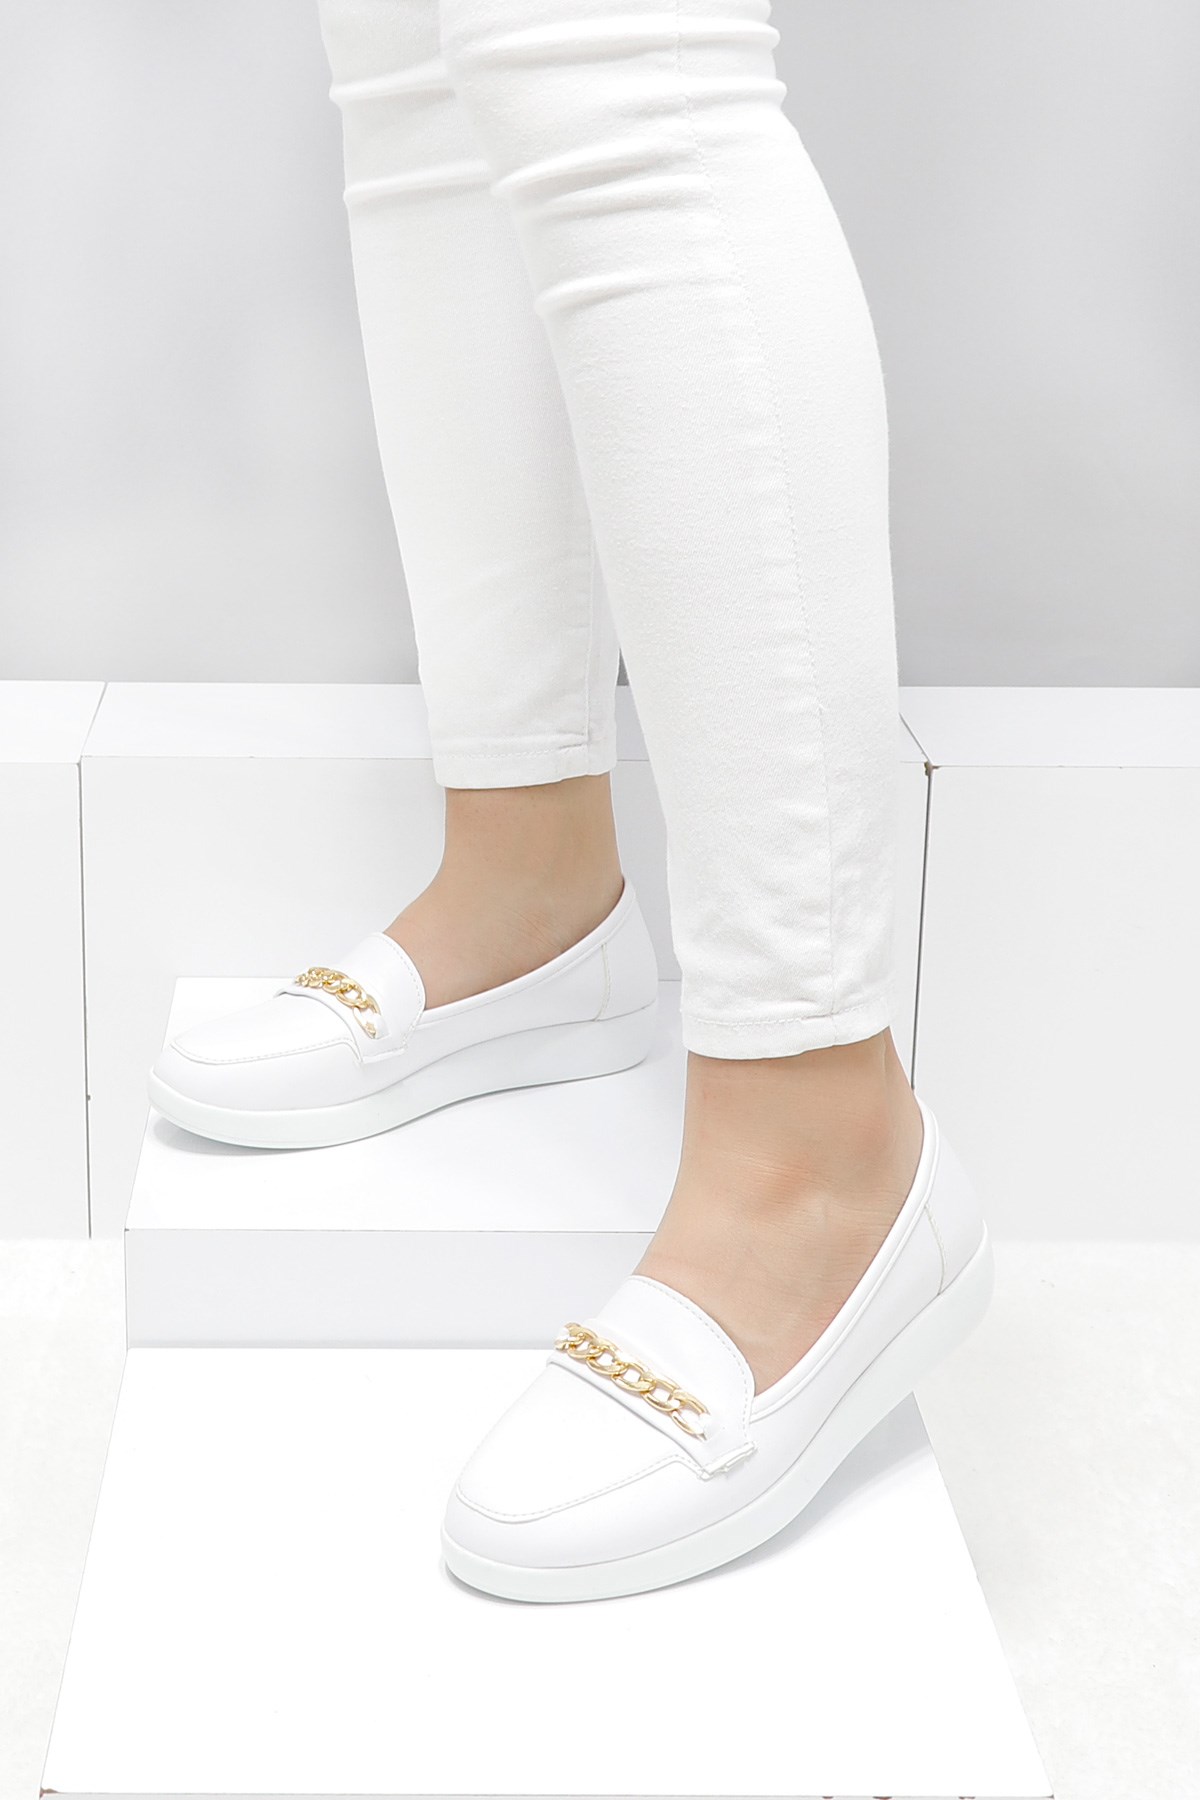 Beyaz Zincirli Kadın Babet Ayakkabı 2127 Fiyatı ve Modelleri